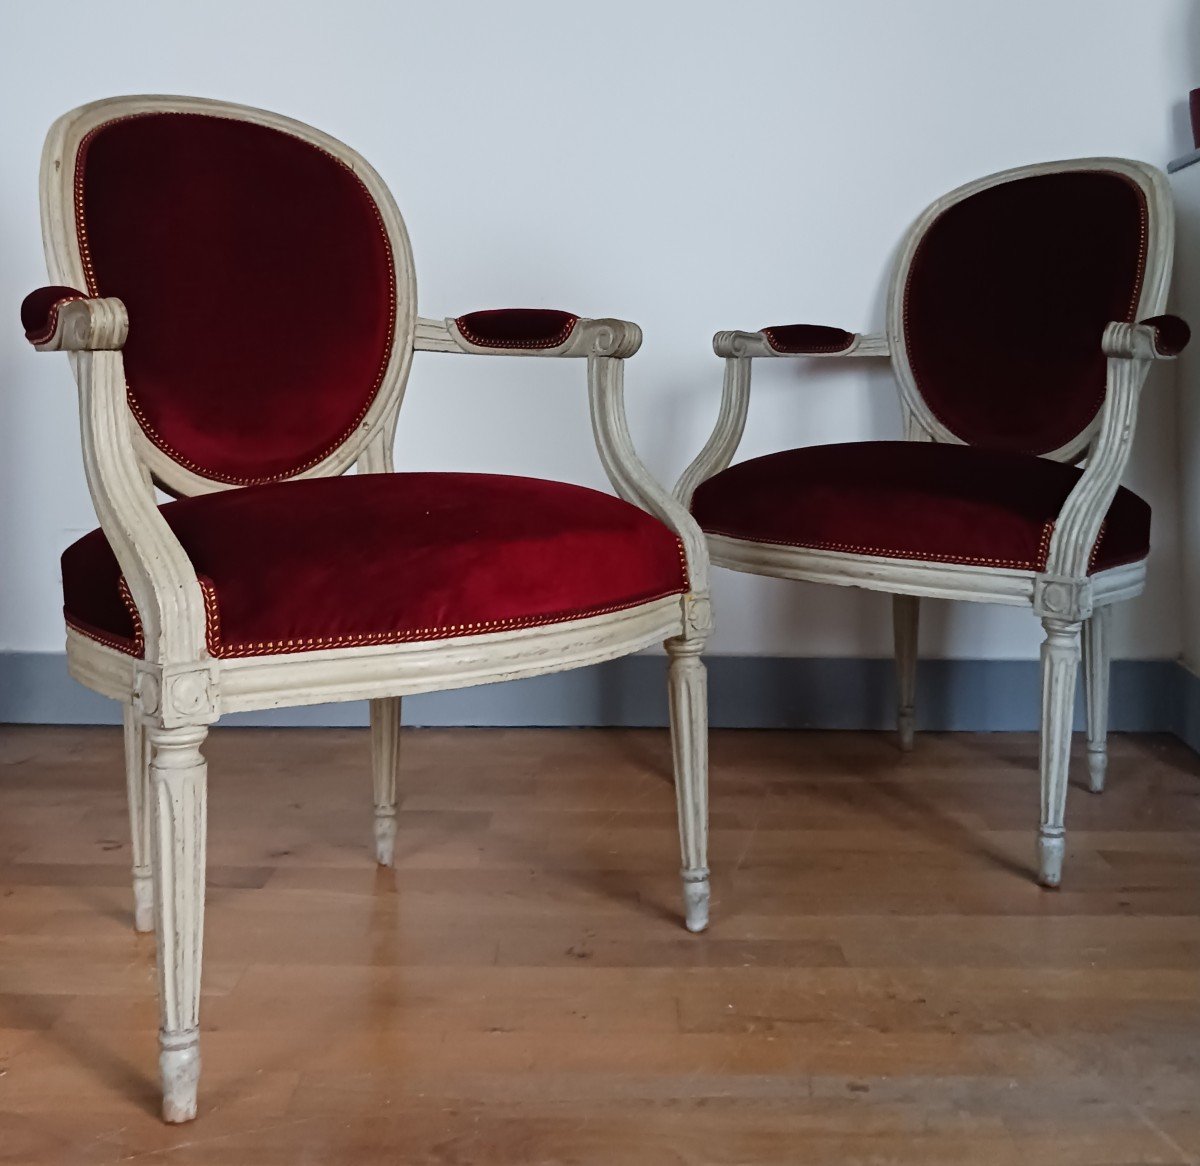 Claude Gorgu, maître en 1770 - paire de fauteuils en cabriolet - restaurés - velours jaspé - numéro d'inventaire